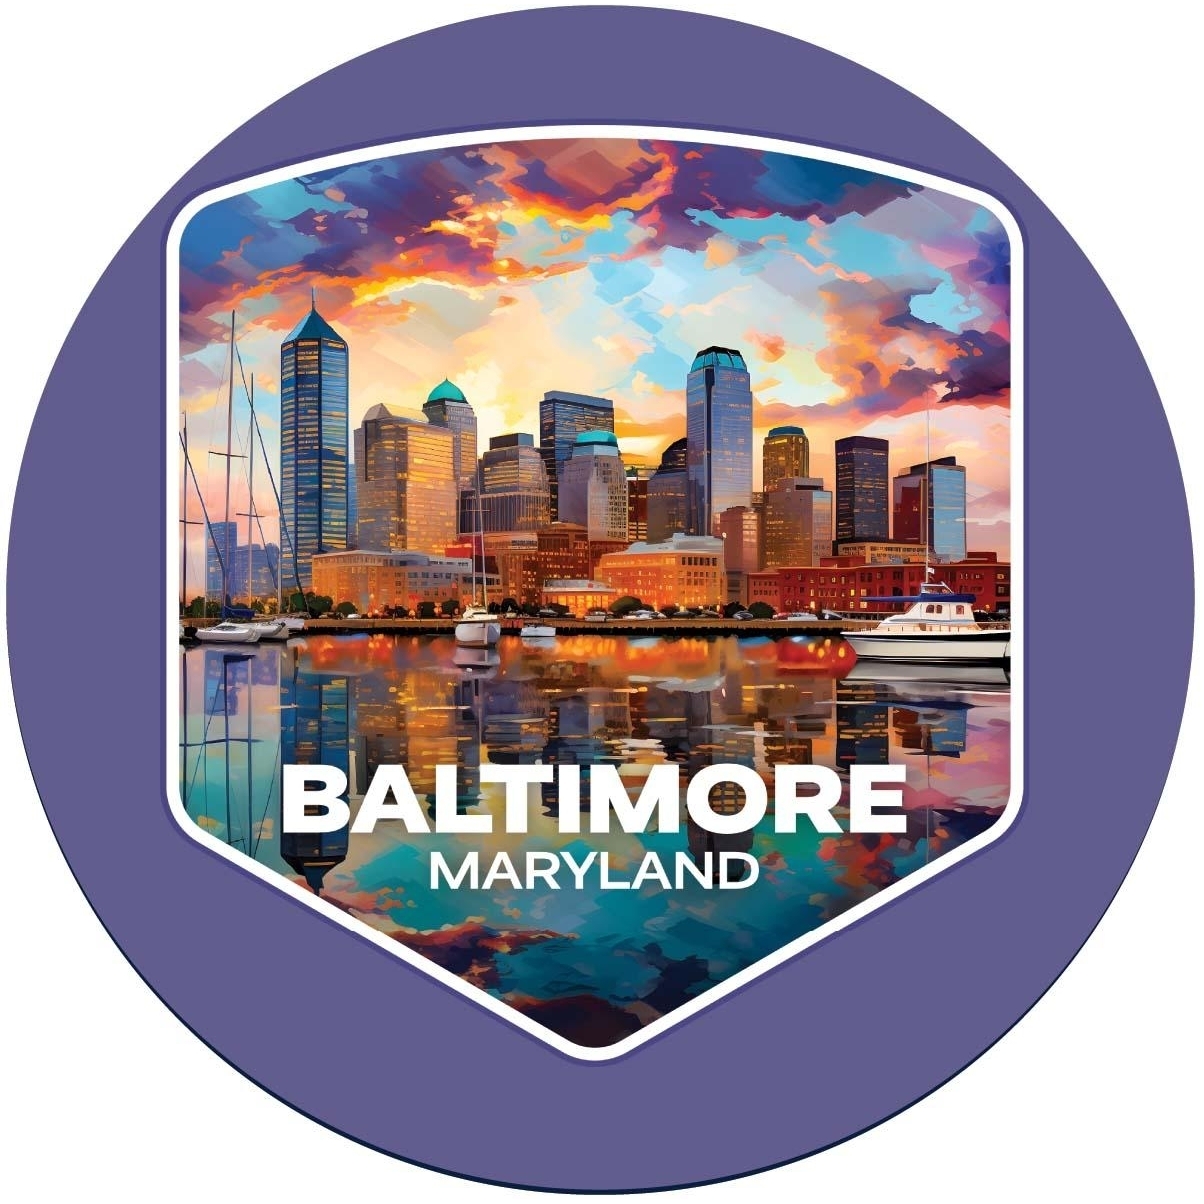 Baltimore Maryland A Souvenir Round Vinyl Decal Sticker - 6-Inch